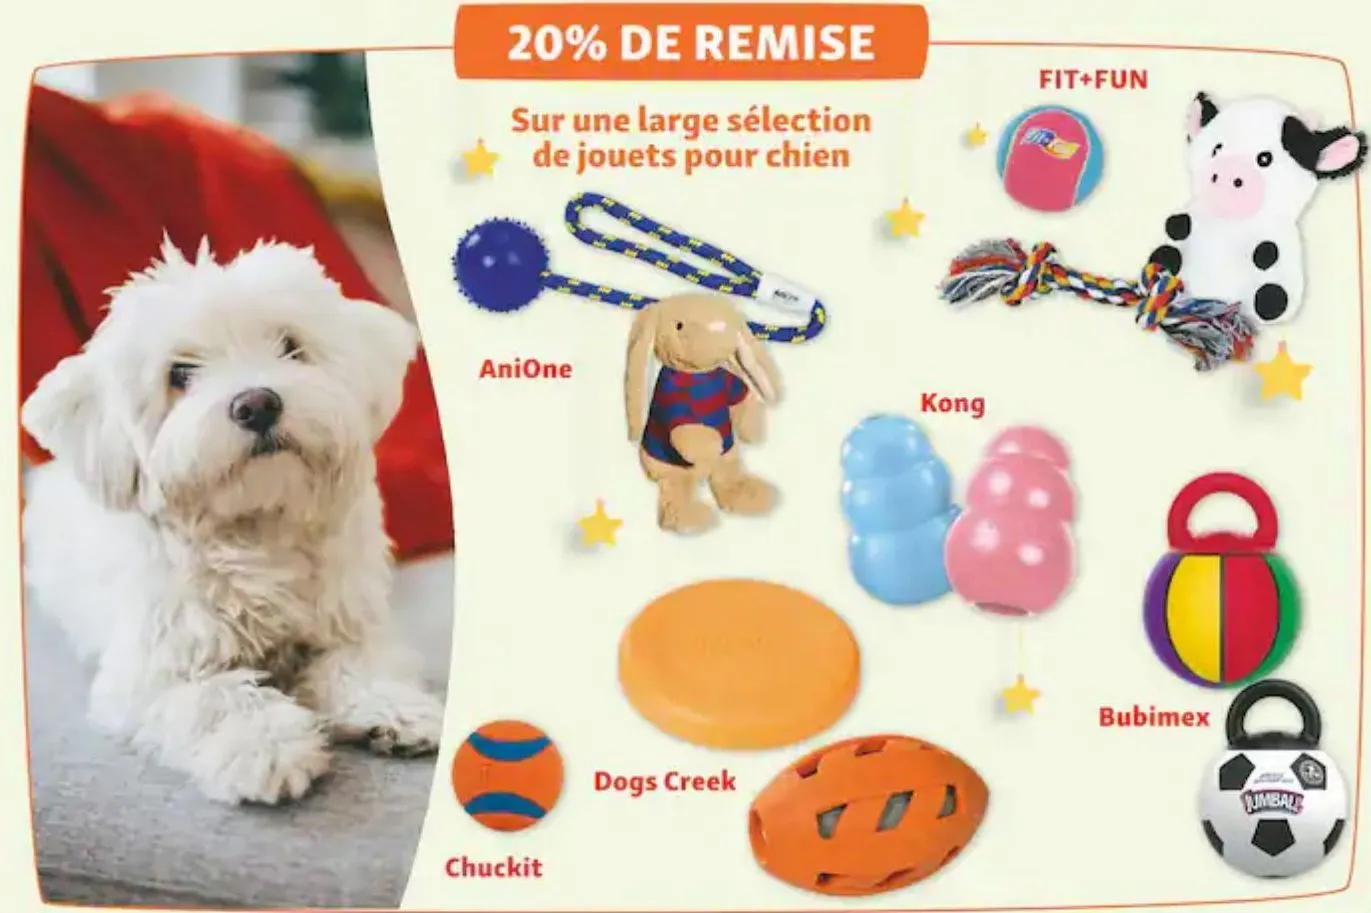 20% de remise sur une large selection de jouets pour chien